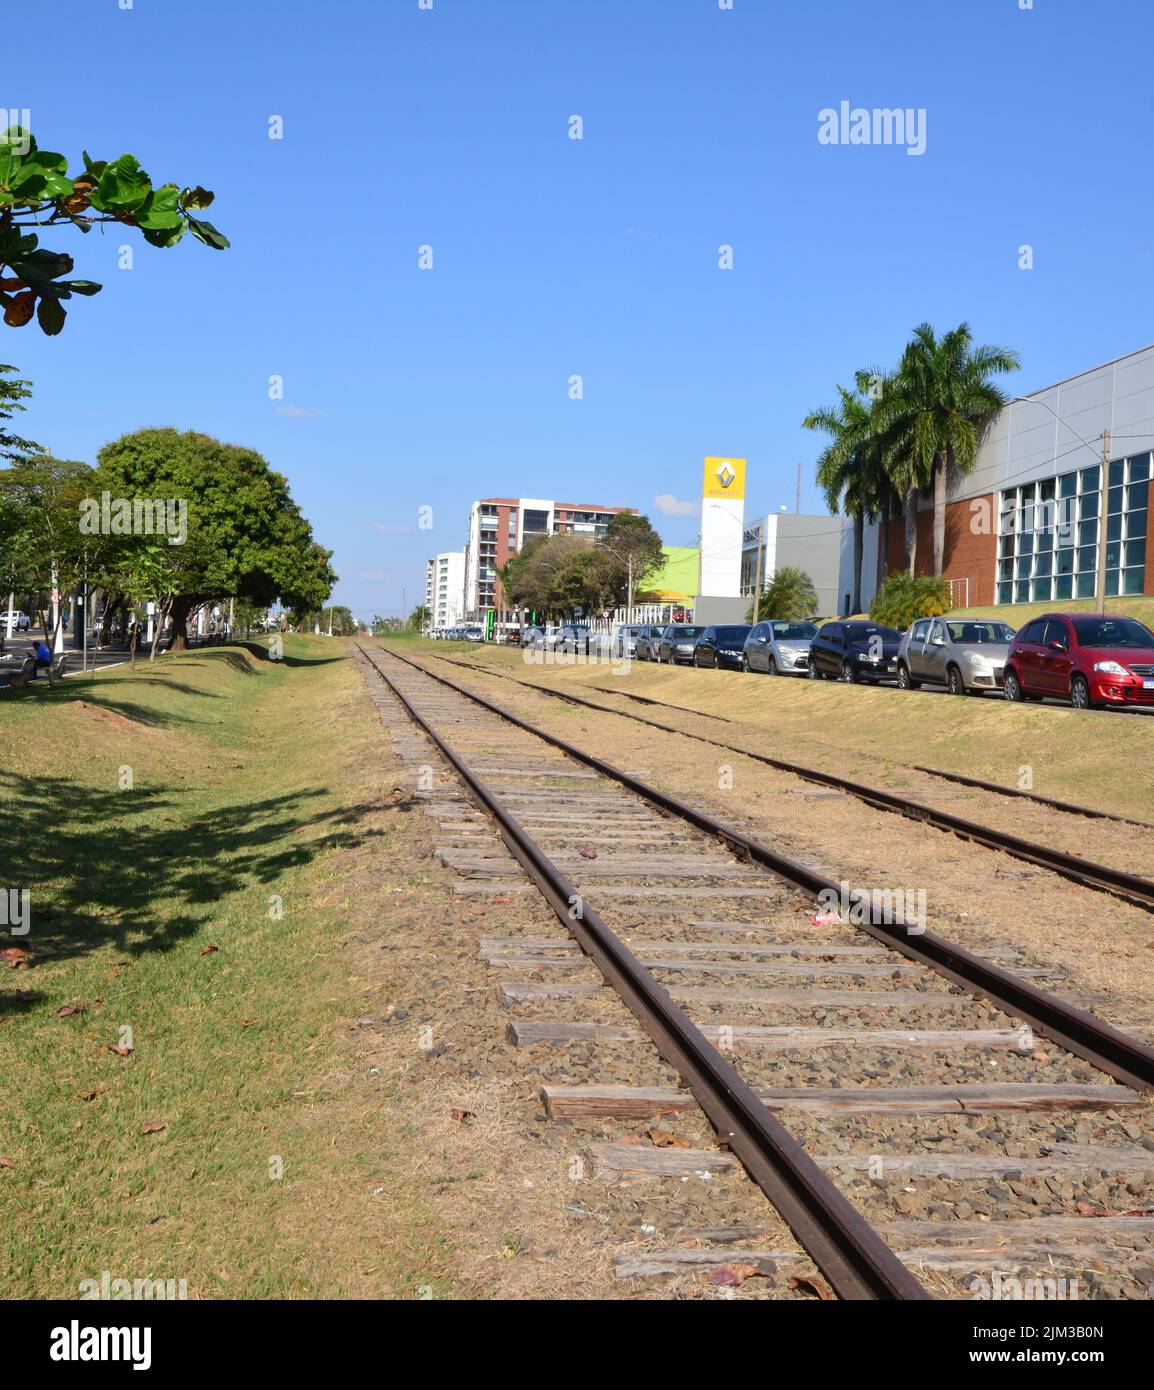 Eisenbahn im Stadtgebiet, Parkplatz, Bäume und Gebäude im Hintergrund, Hervorhebung des Logos eines großen französischen Automobilherstellers, Brasilien, South Amer Stockfoto